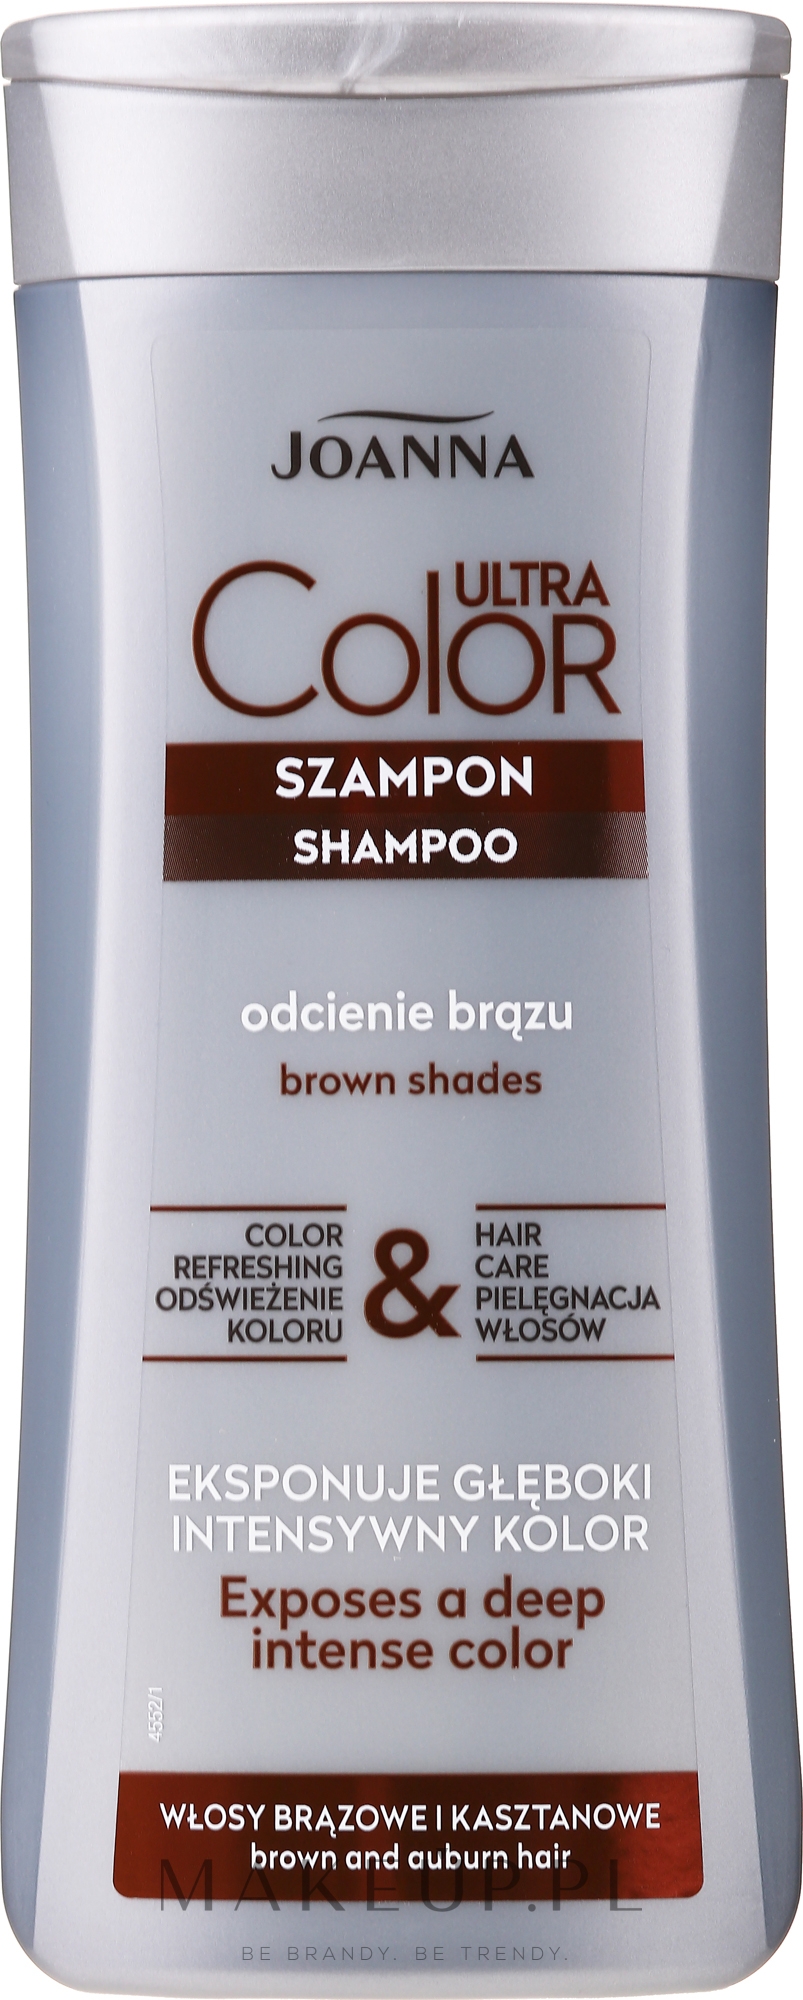 szampon joanna do włosów brązowych